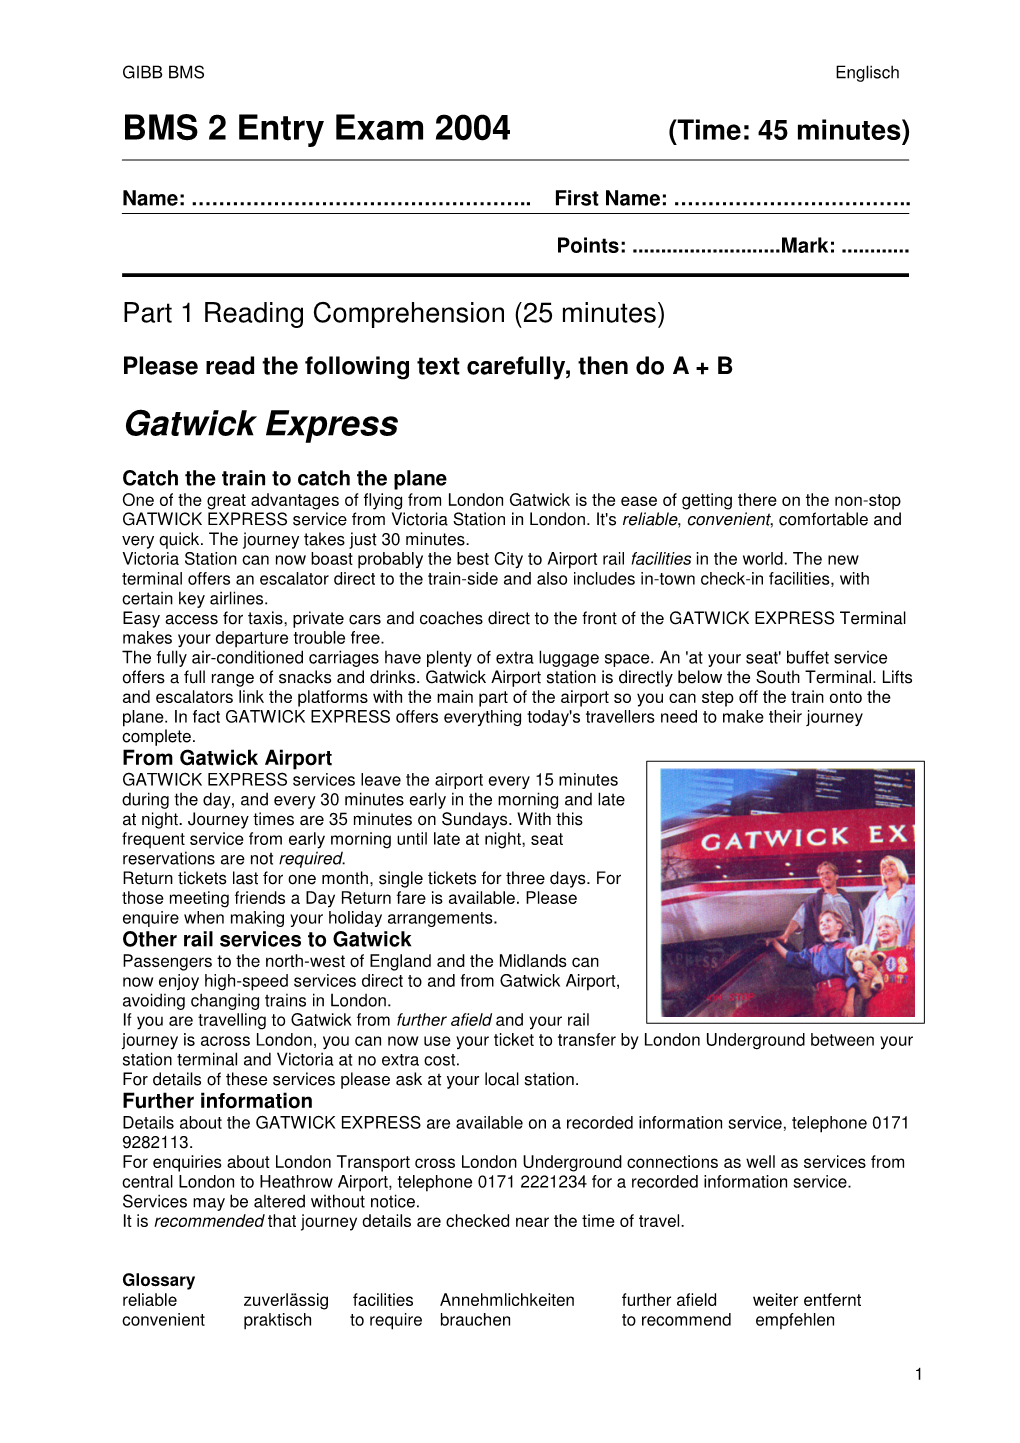 BMS 2 Entry Exam 2004 Gatwick Express